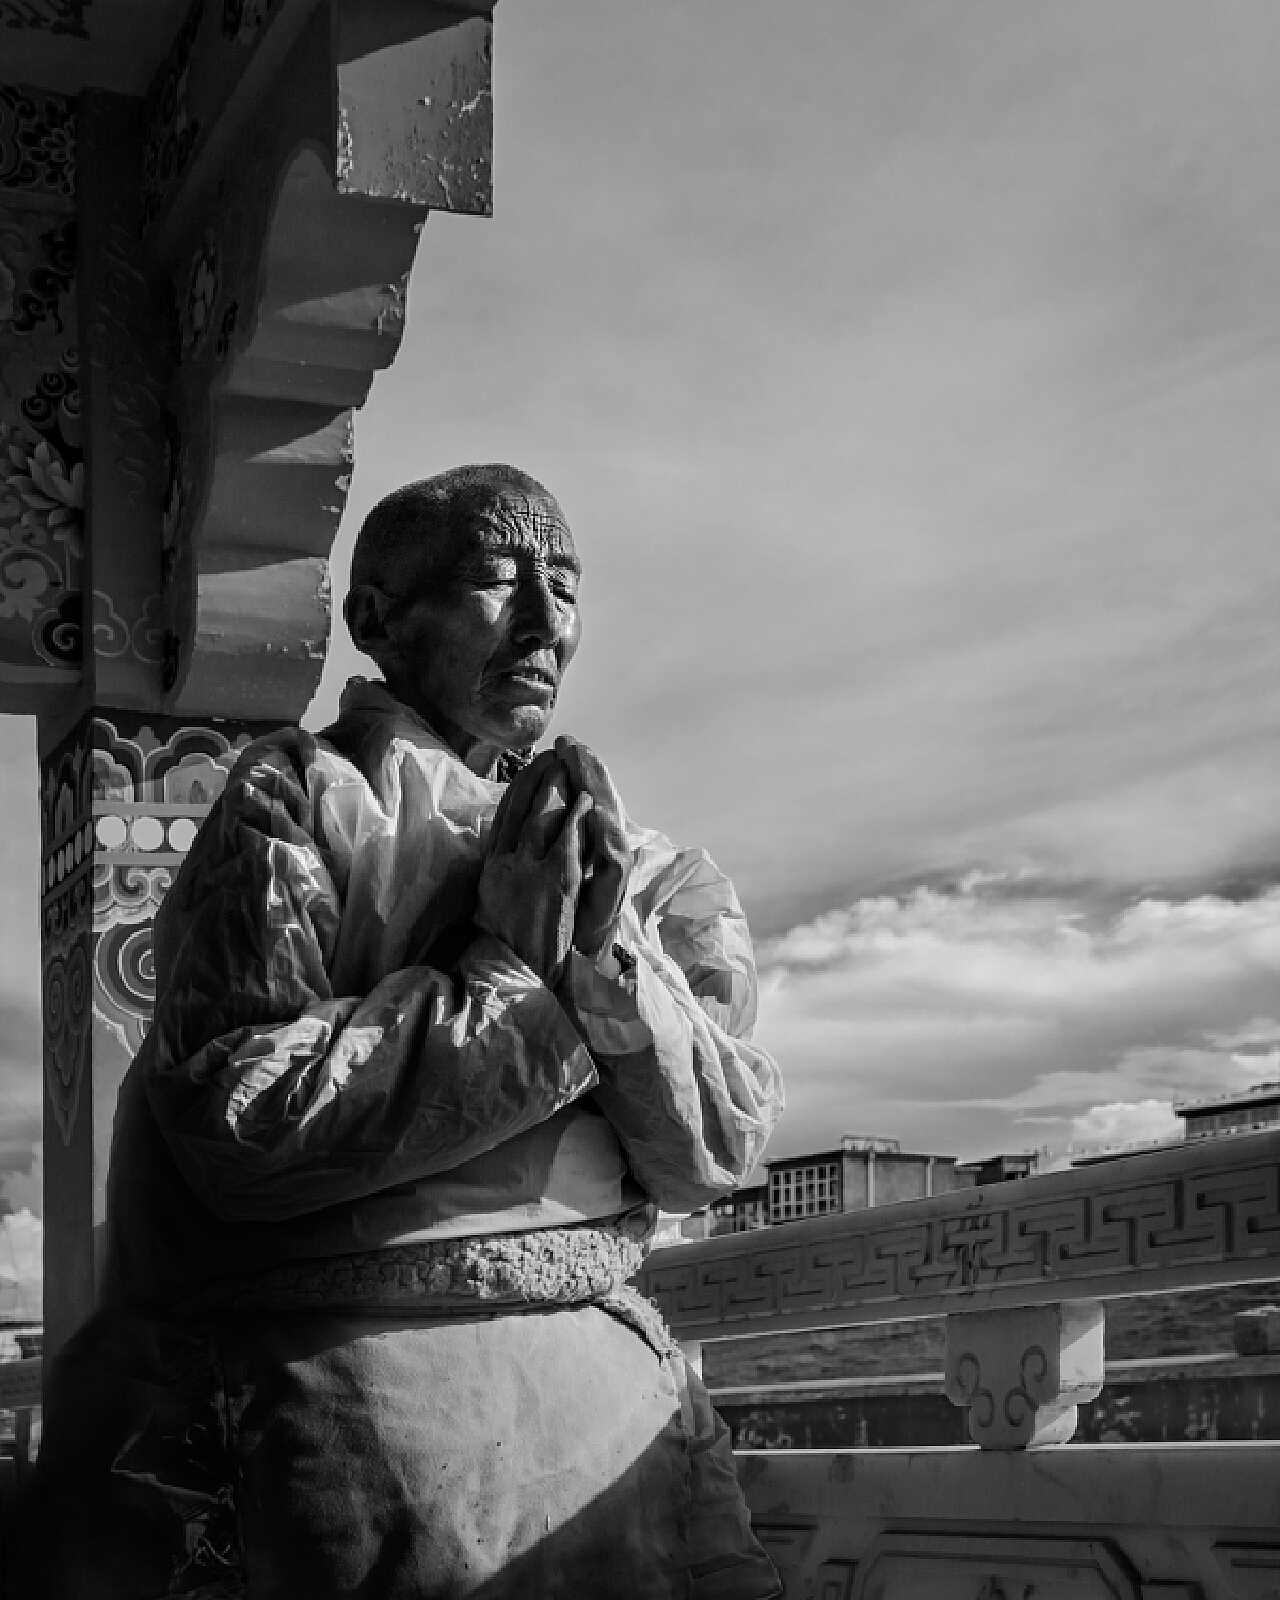 【微观西藏】磕长头的人们和他们的终点-国际在线